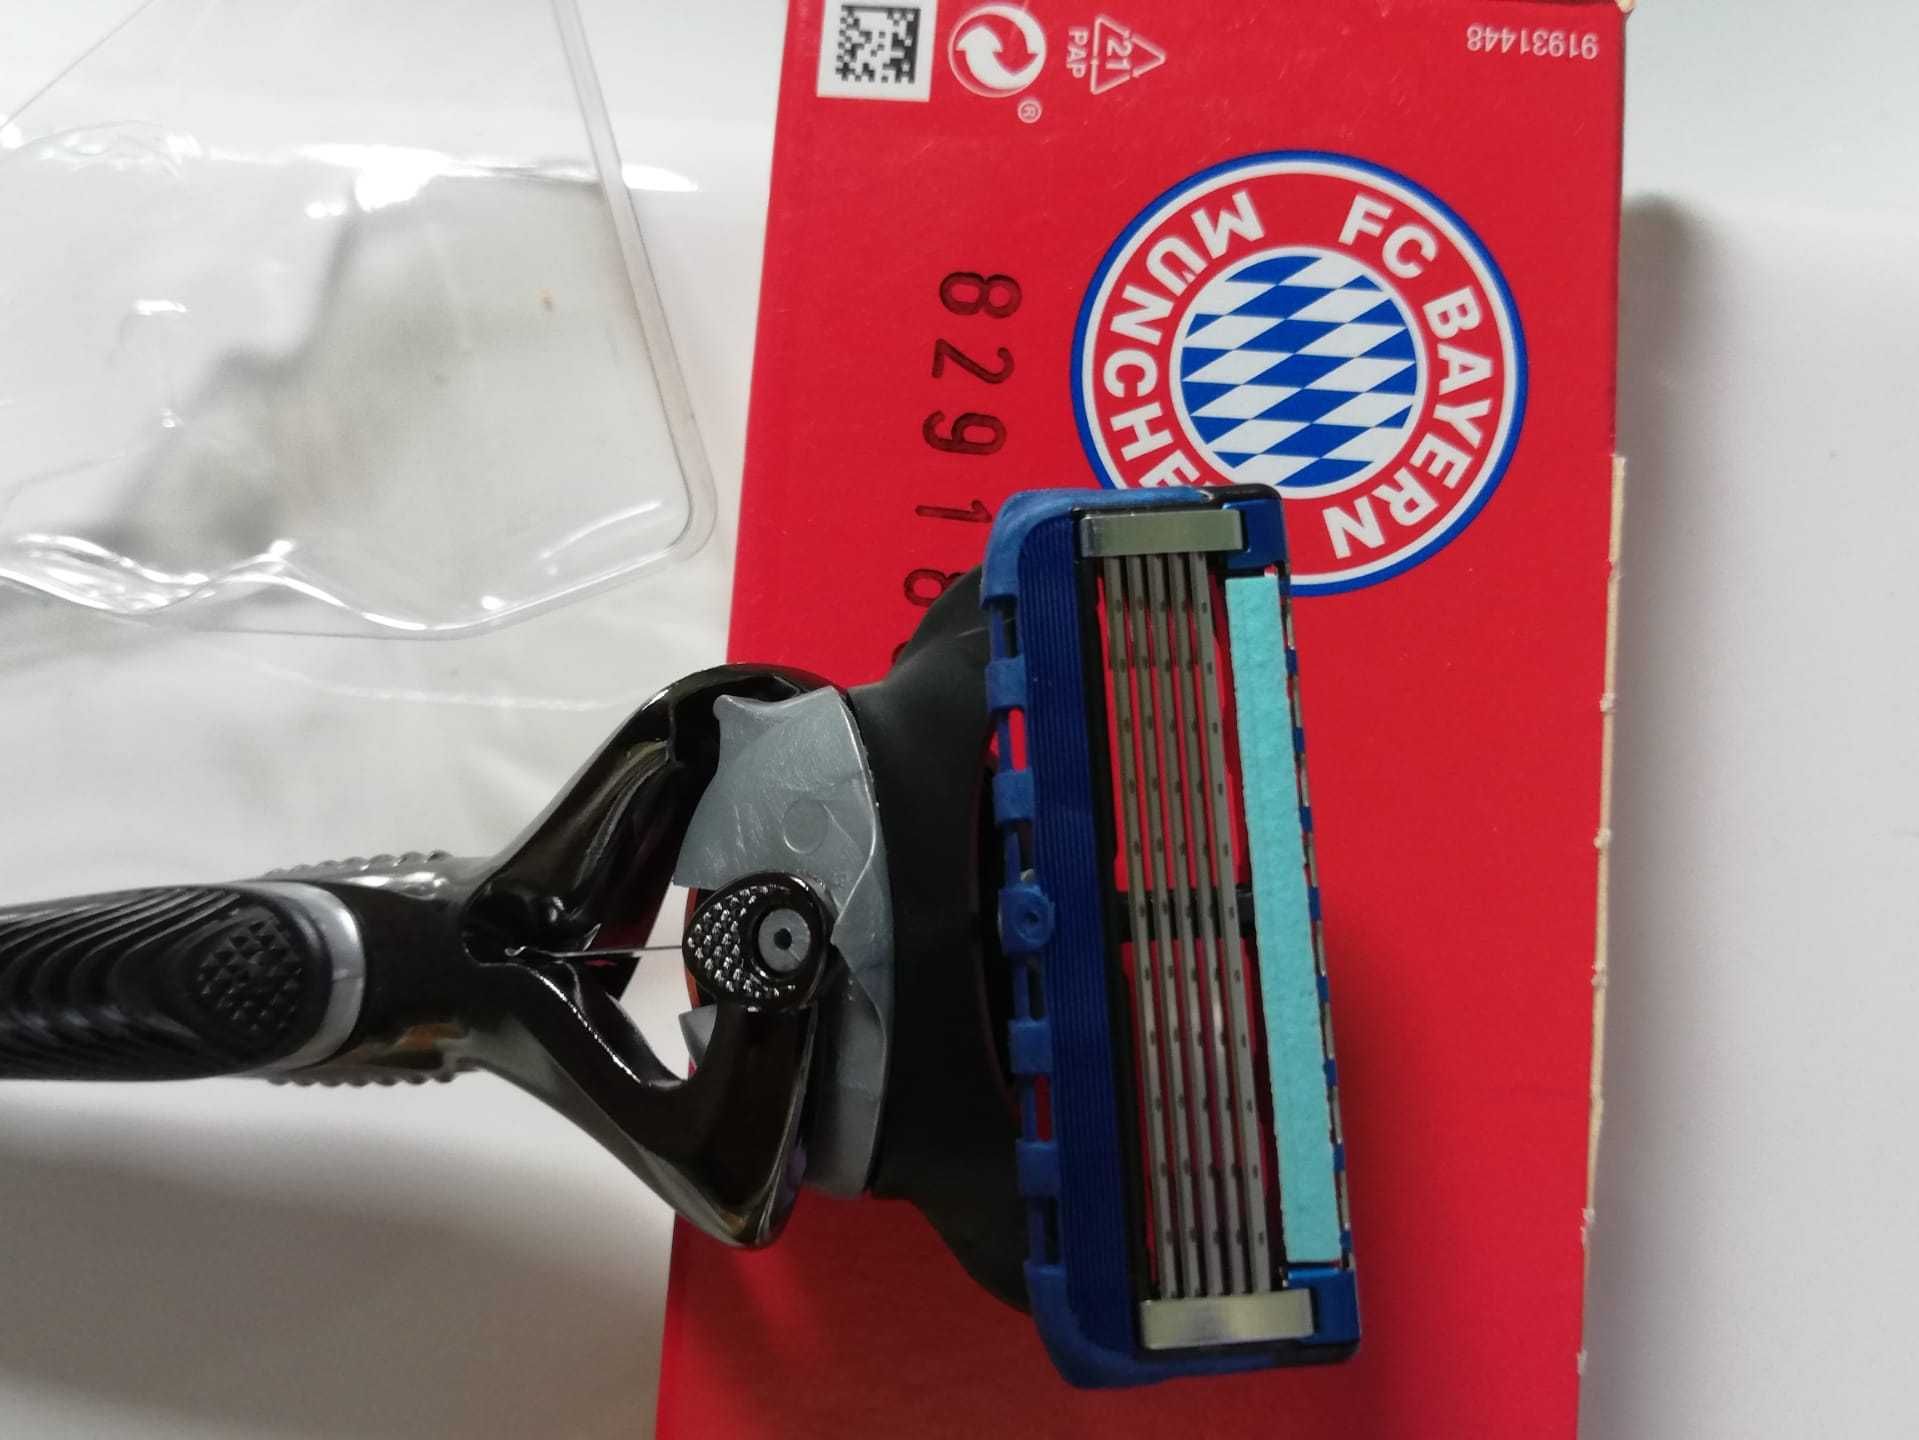 Gillette Fusion 4's, FC Bayern München Novo